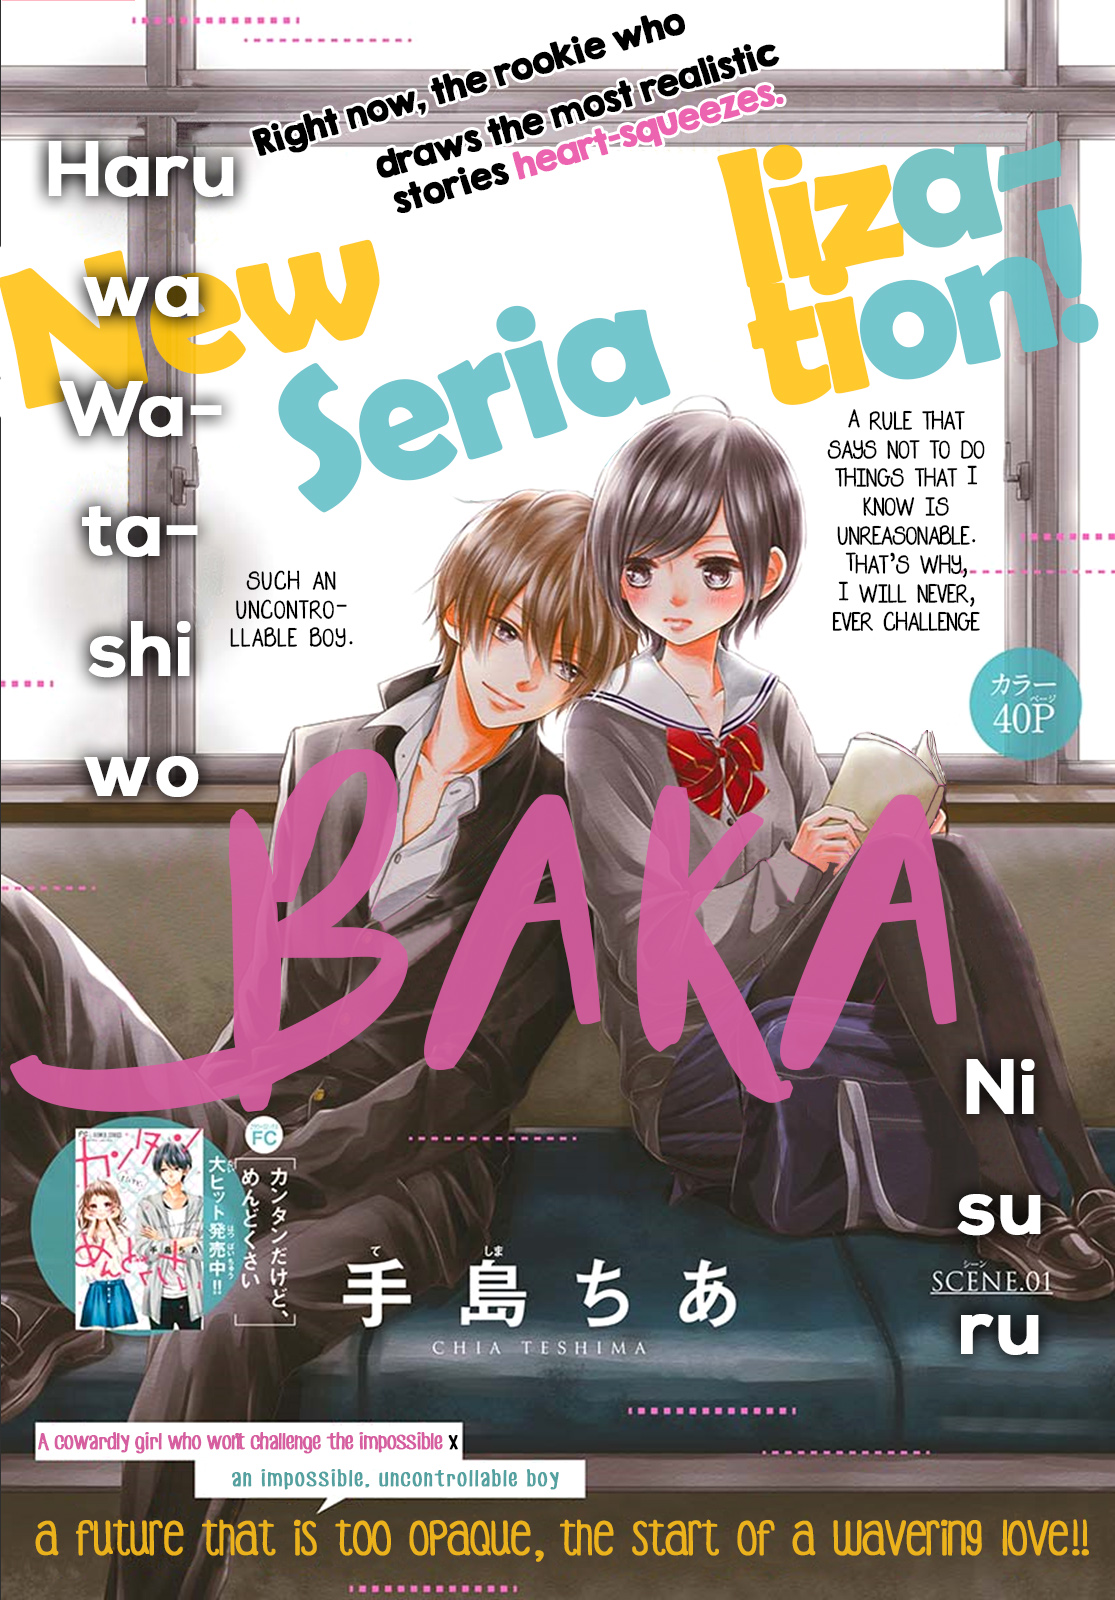 Haru Wa Watashi Wo Baka Ni Suru Vol. 1 Ch. 1